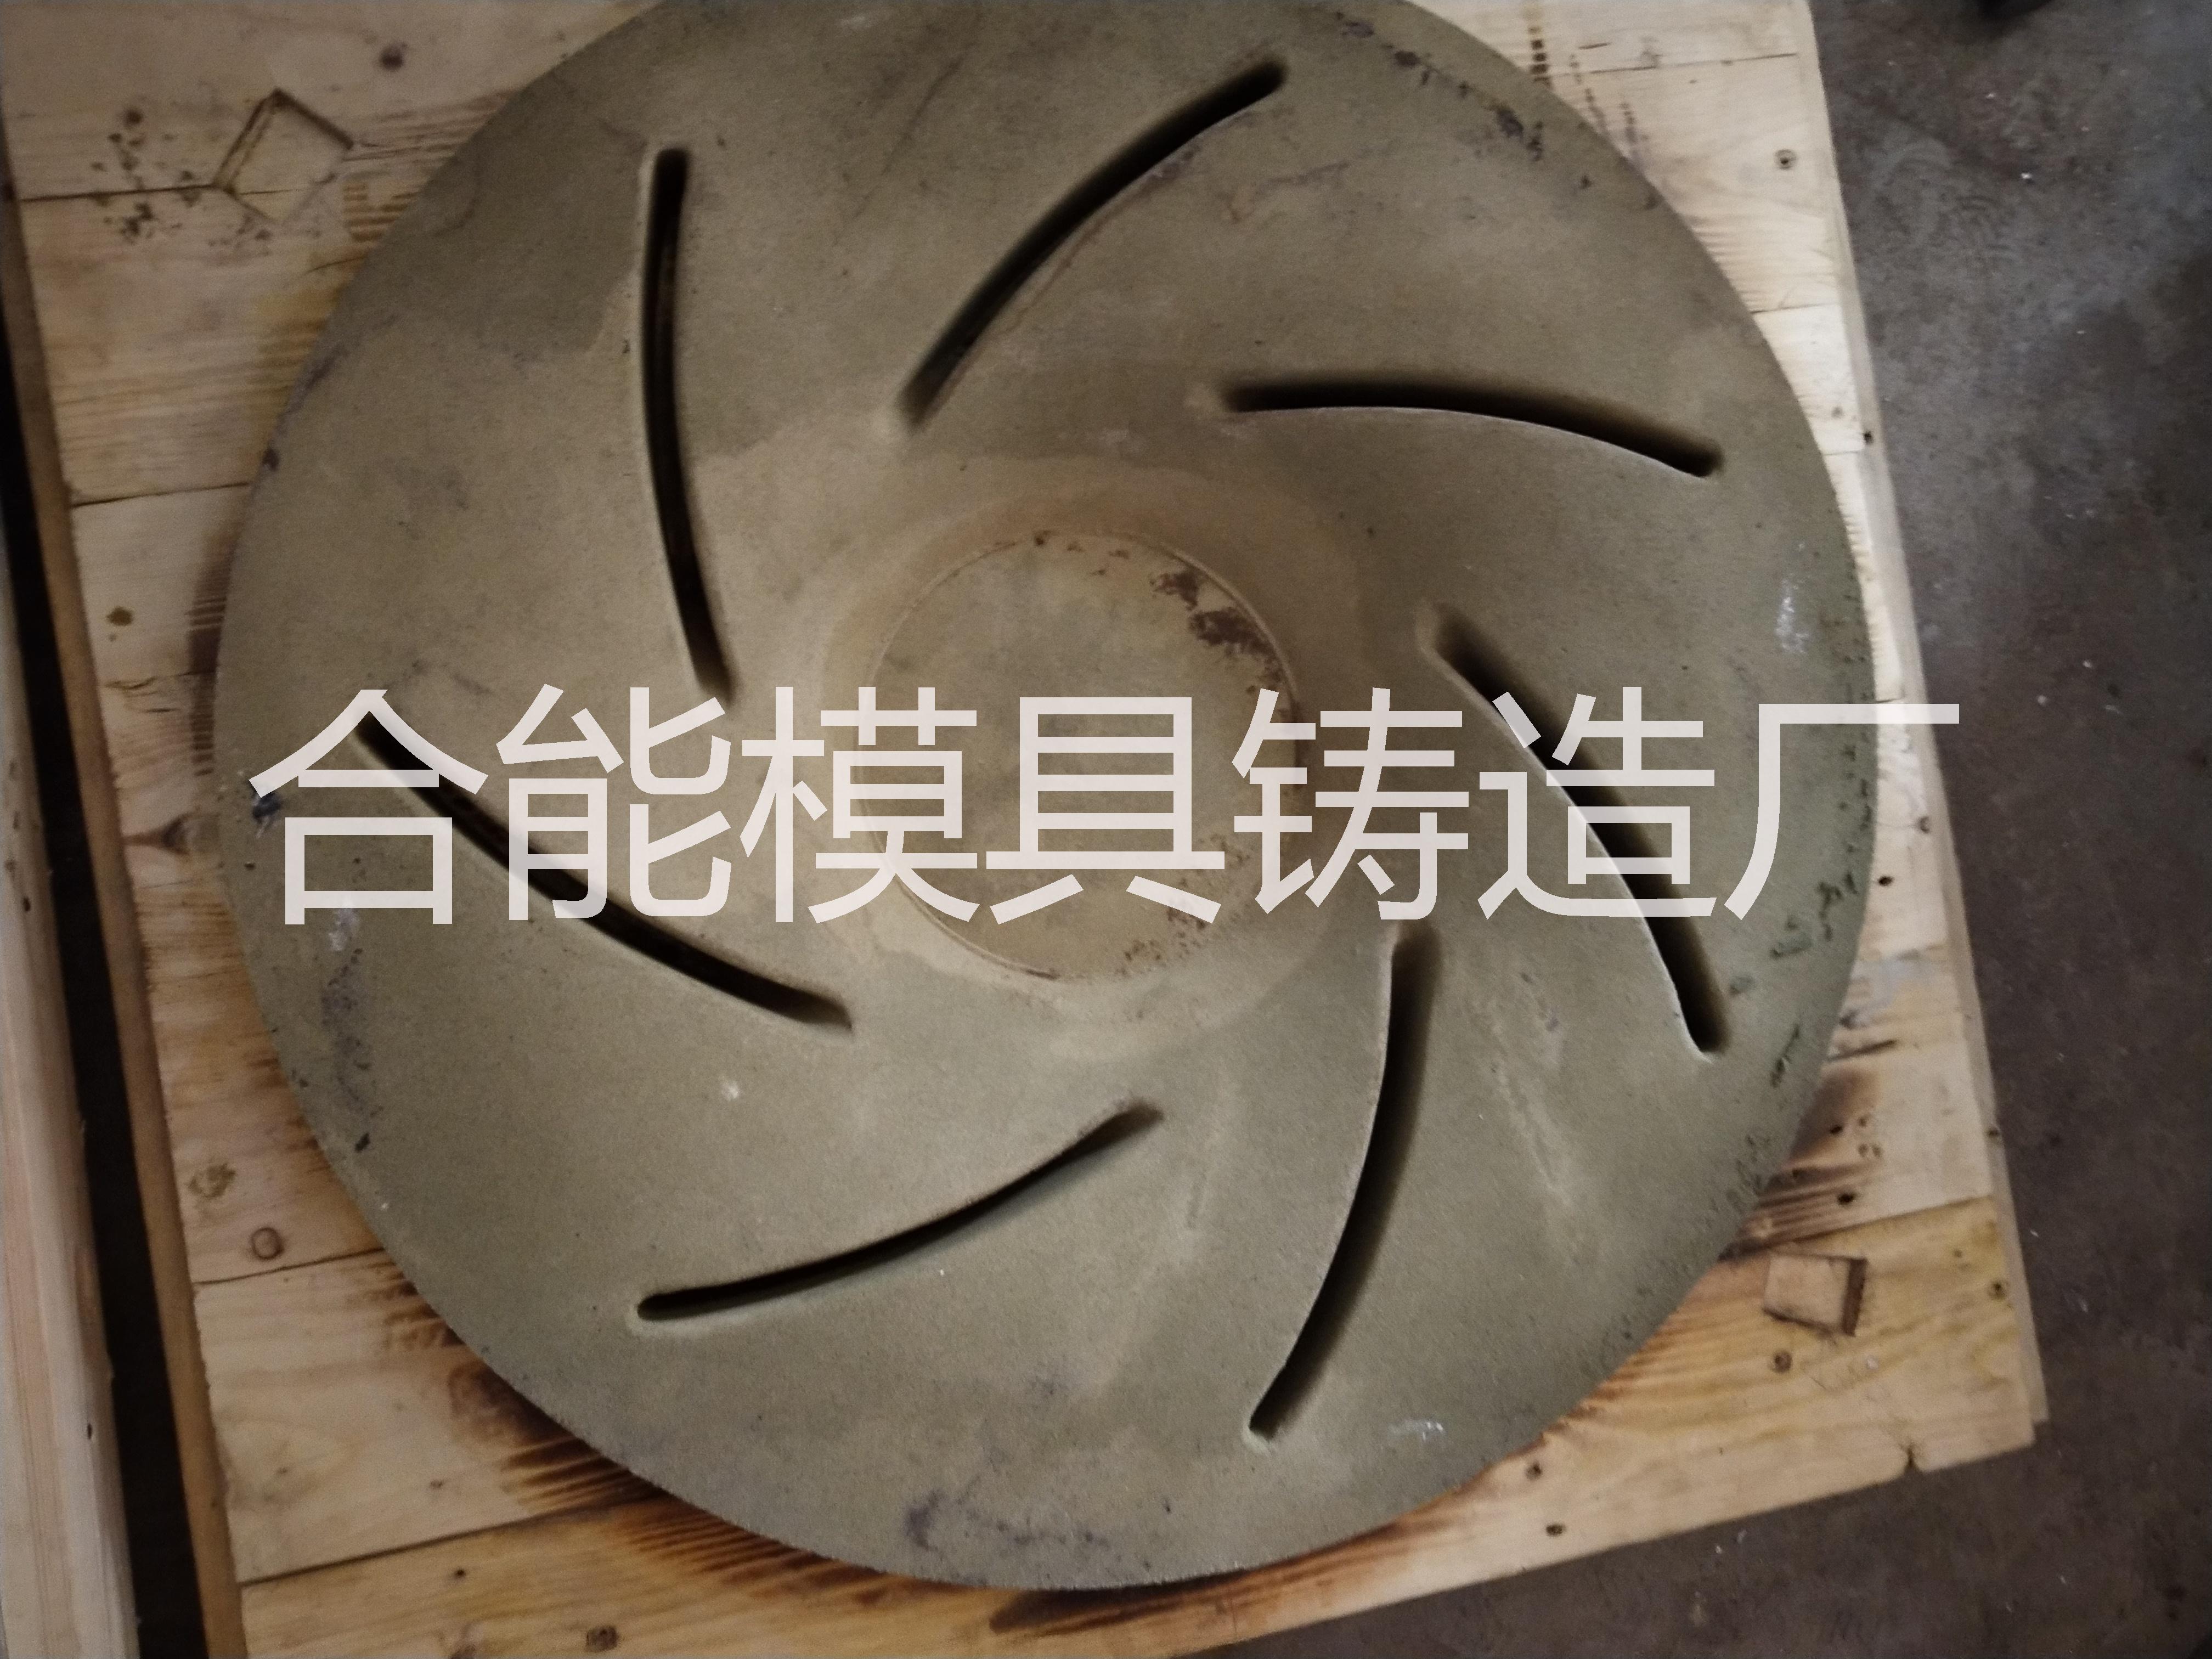 铝材铝材应用于翻砂铸造上的作用